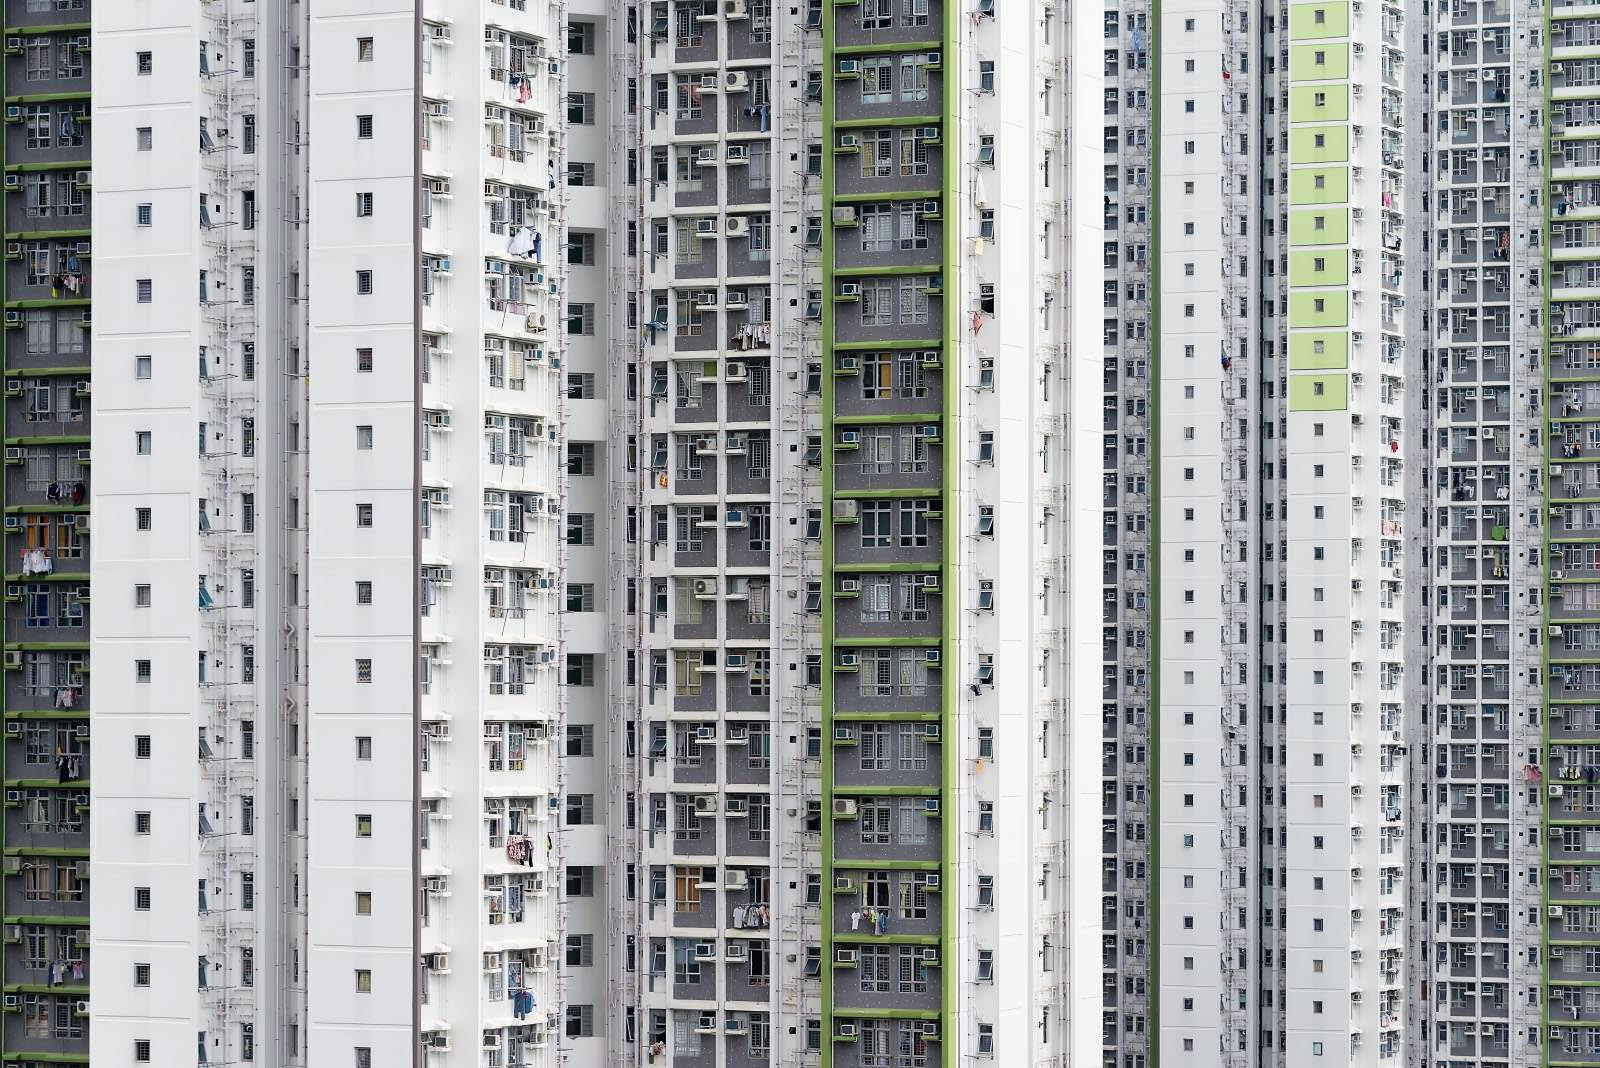 Ein weiteres Bild mit Wohnlanschaften aus Hong Kong